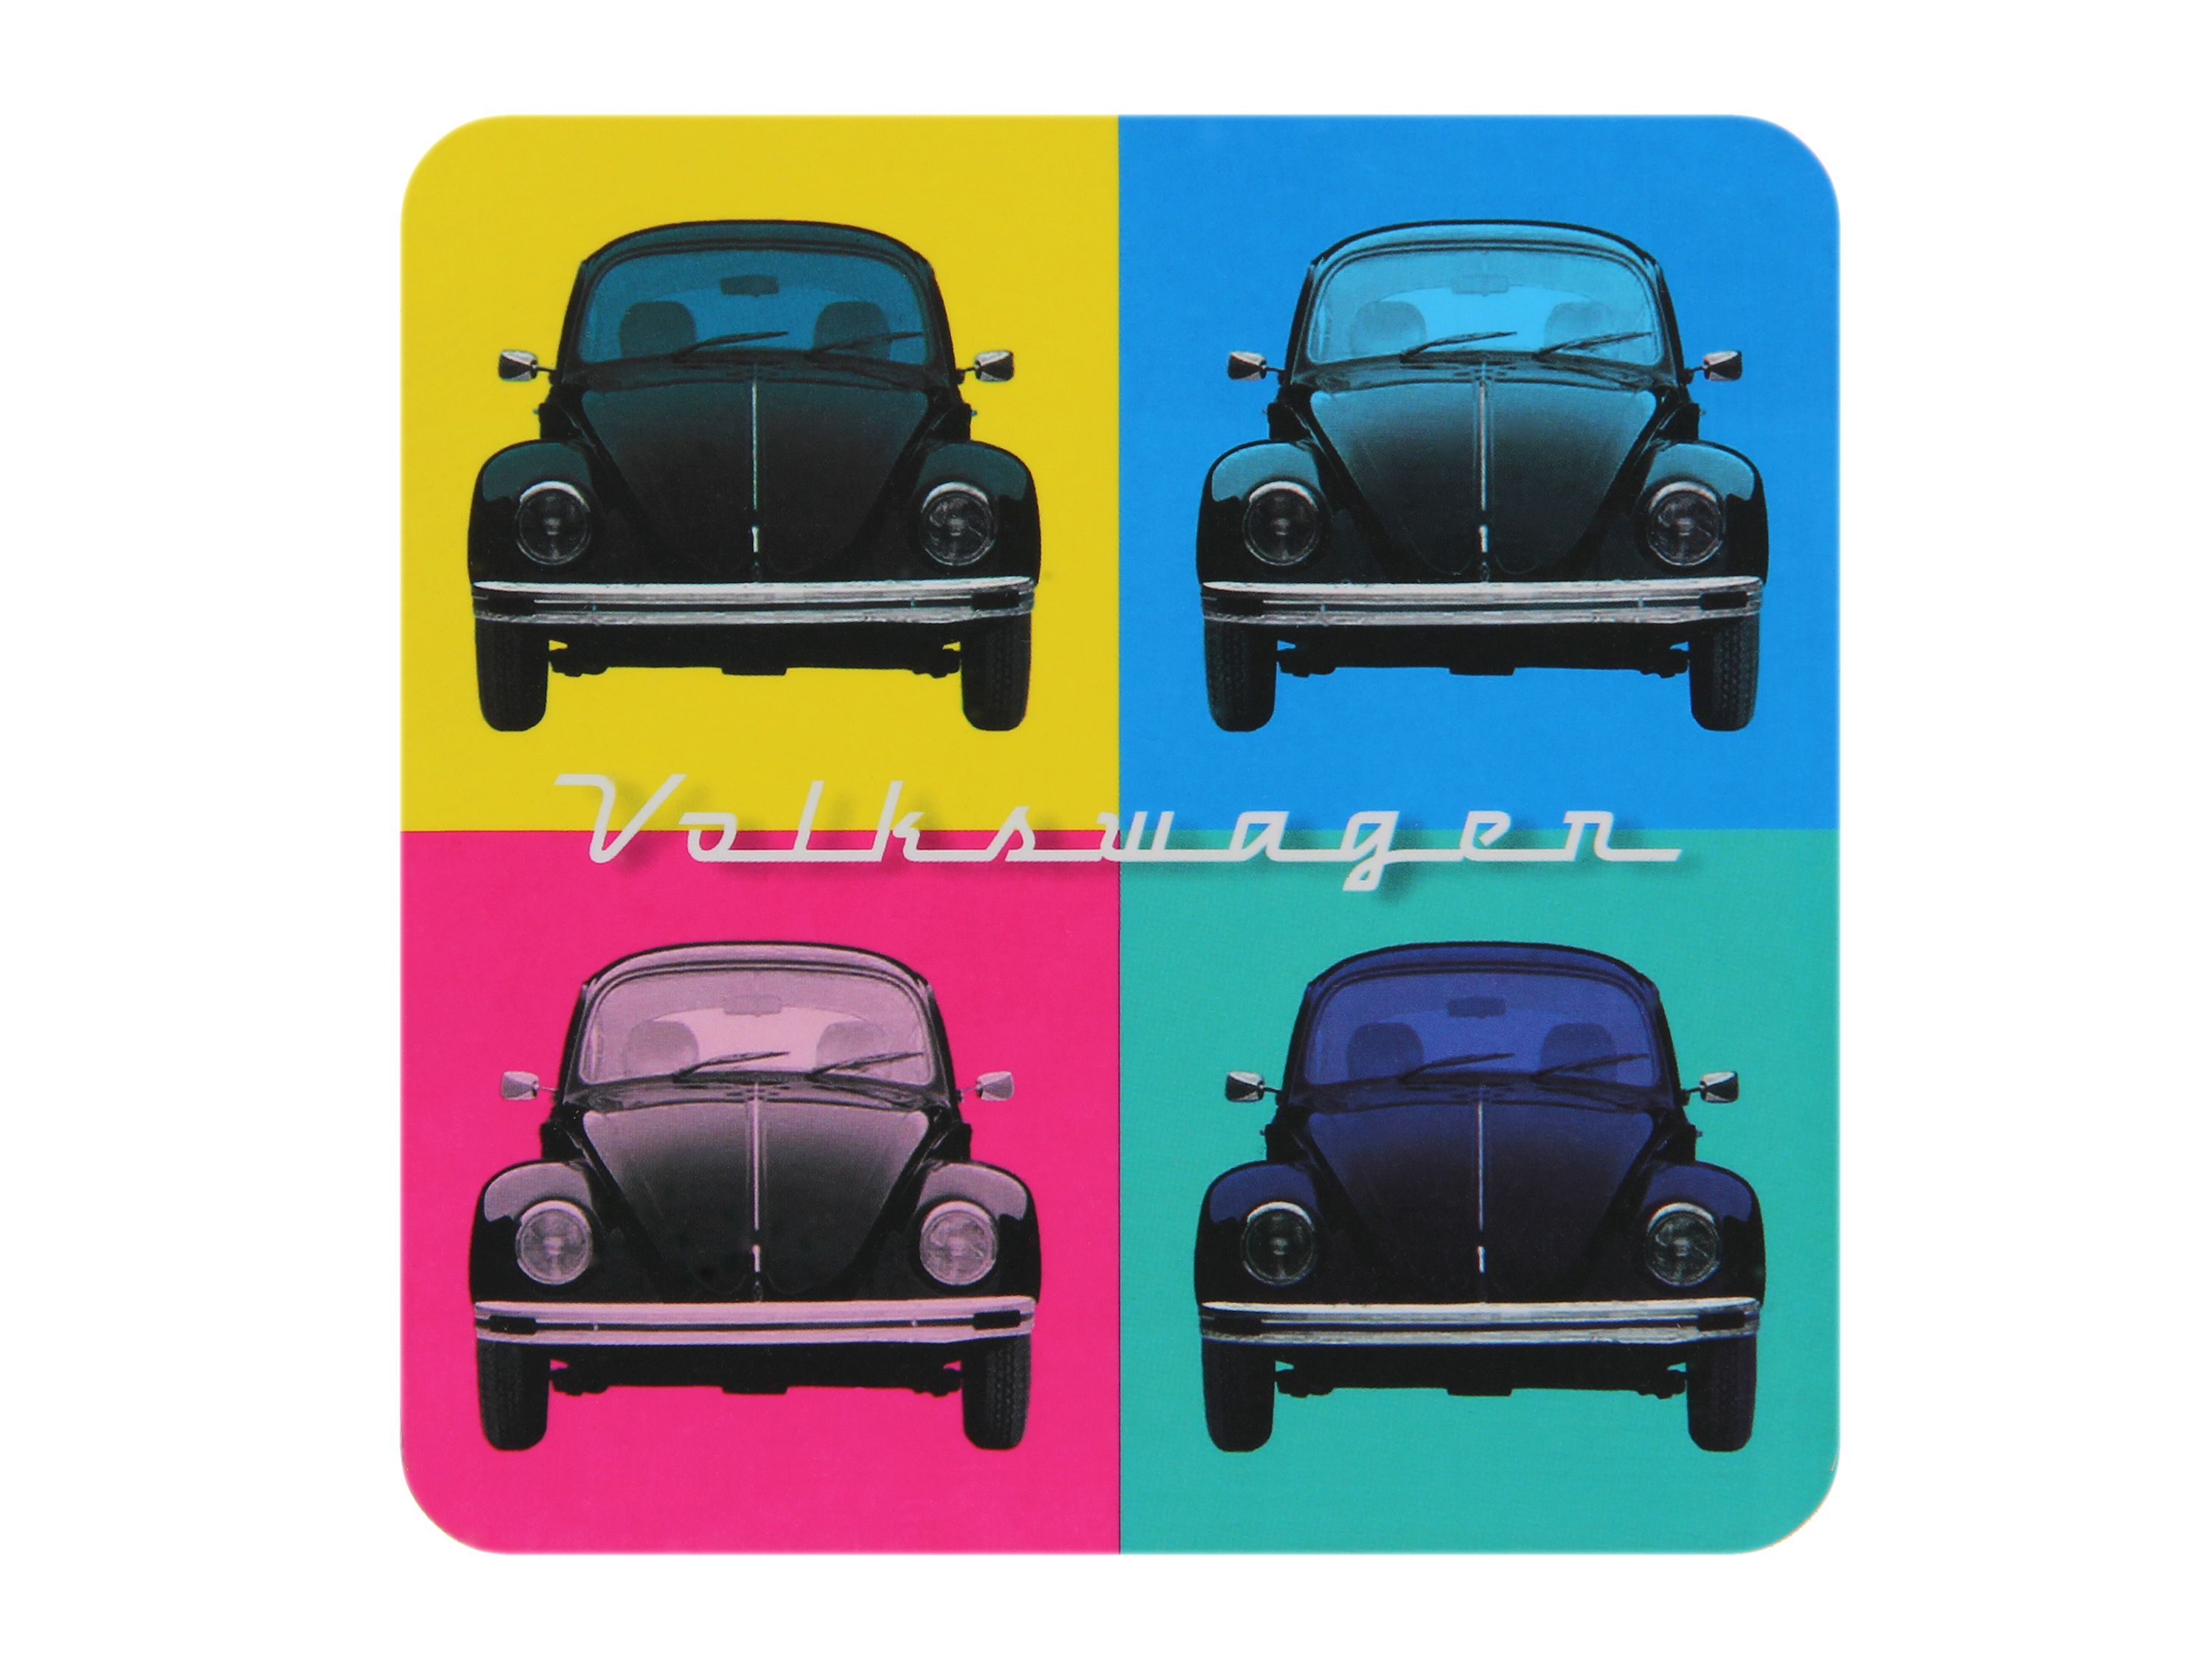 VOLKSWAGEN VW Combi Dessous-de-bouteille, 4 pièces - Multicolore